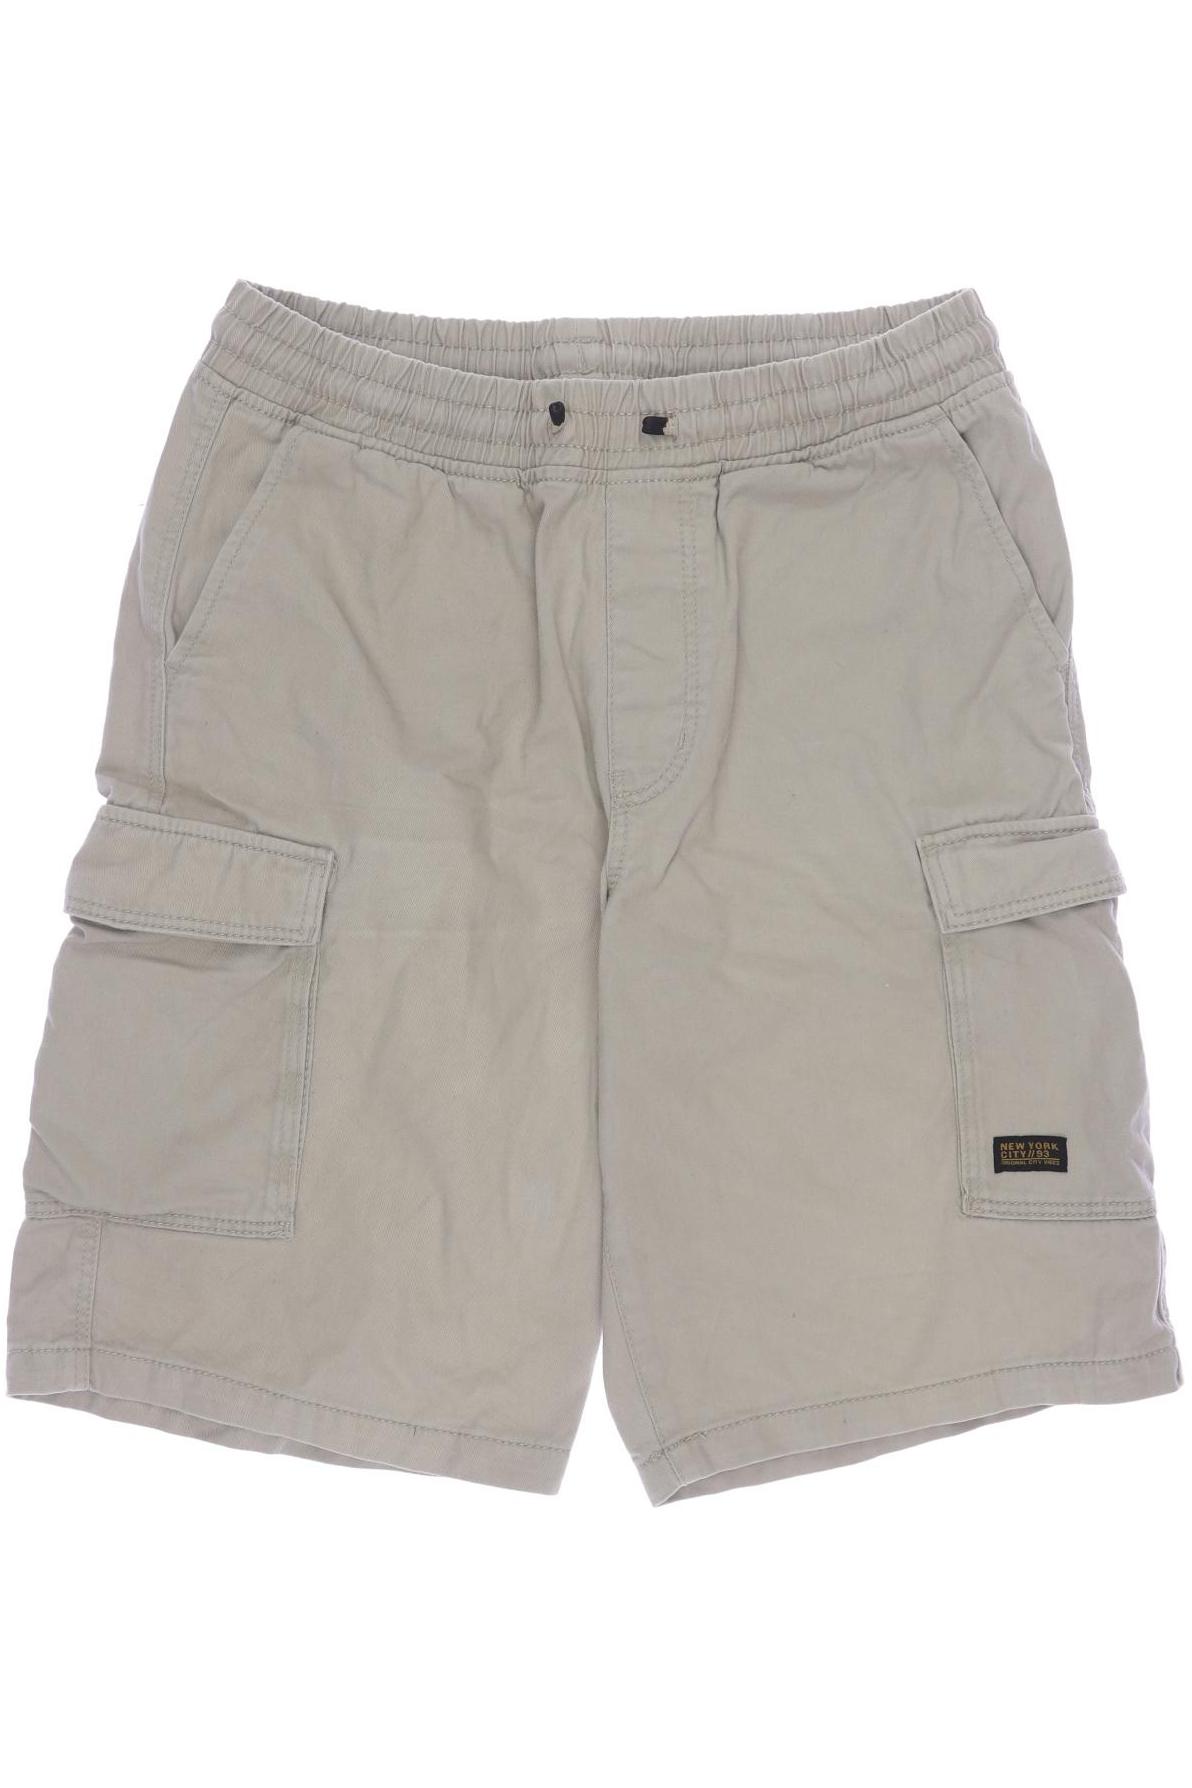 H&M Herren Shorts, beige, Gr. 158 von H&M